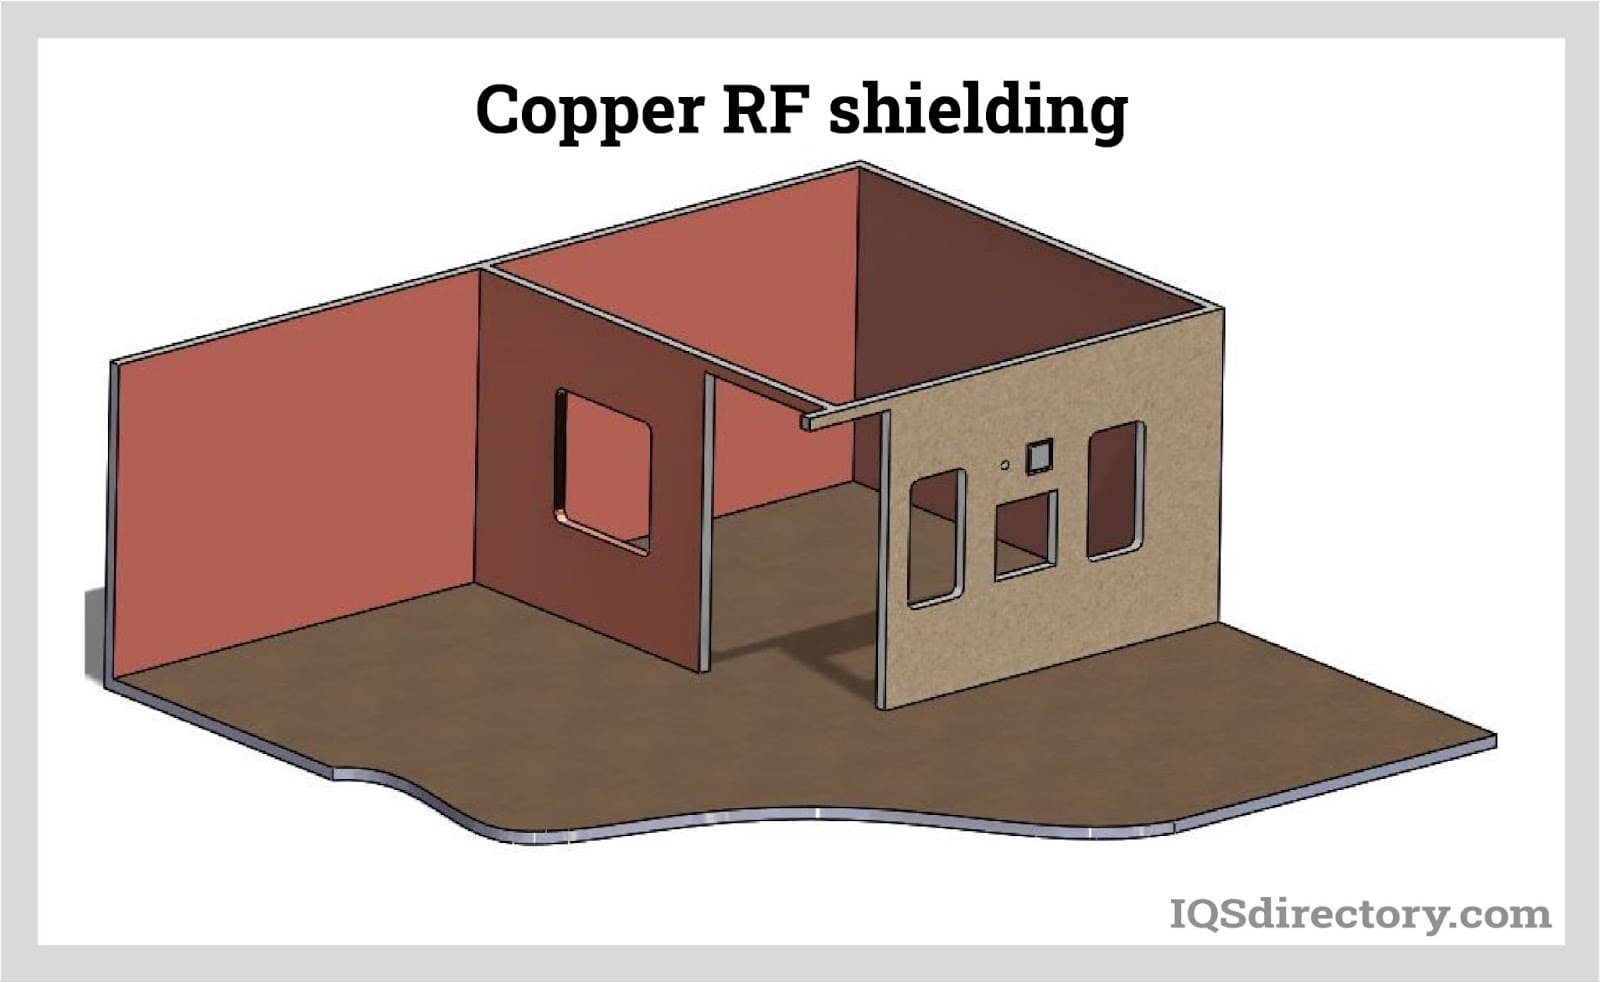 Copper RF shielding